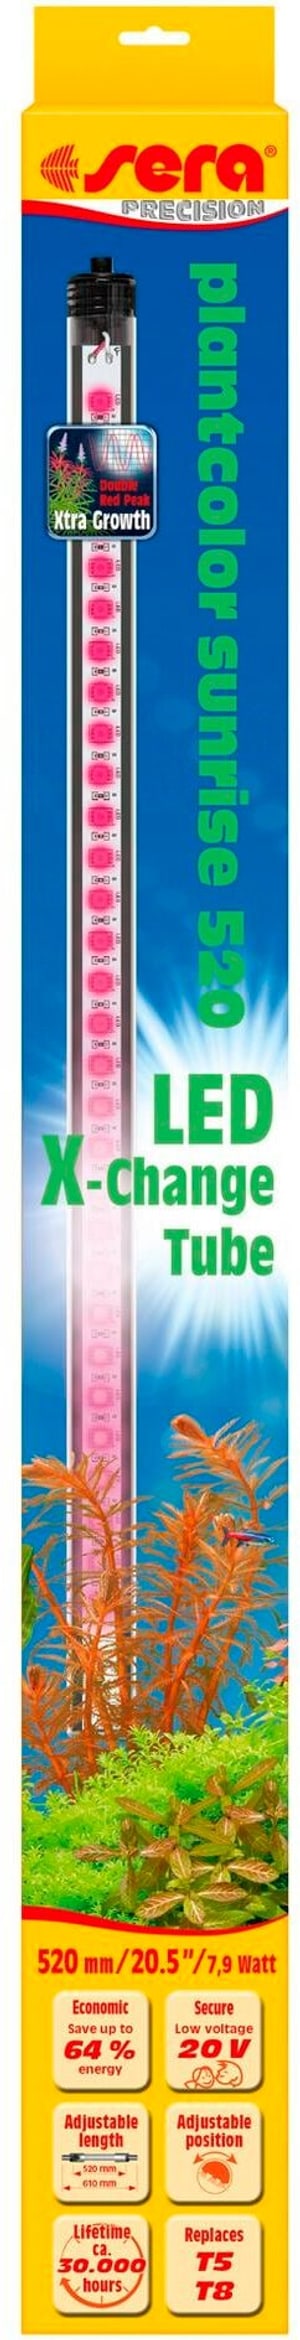 Leuchtmittel LED X-Change Tube PCS, 520 mm, 7.9 W